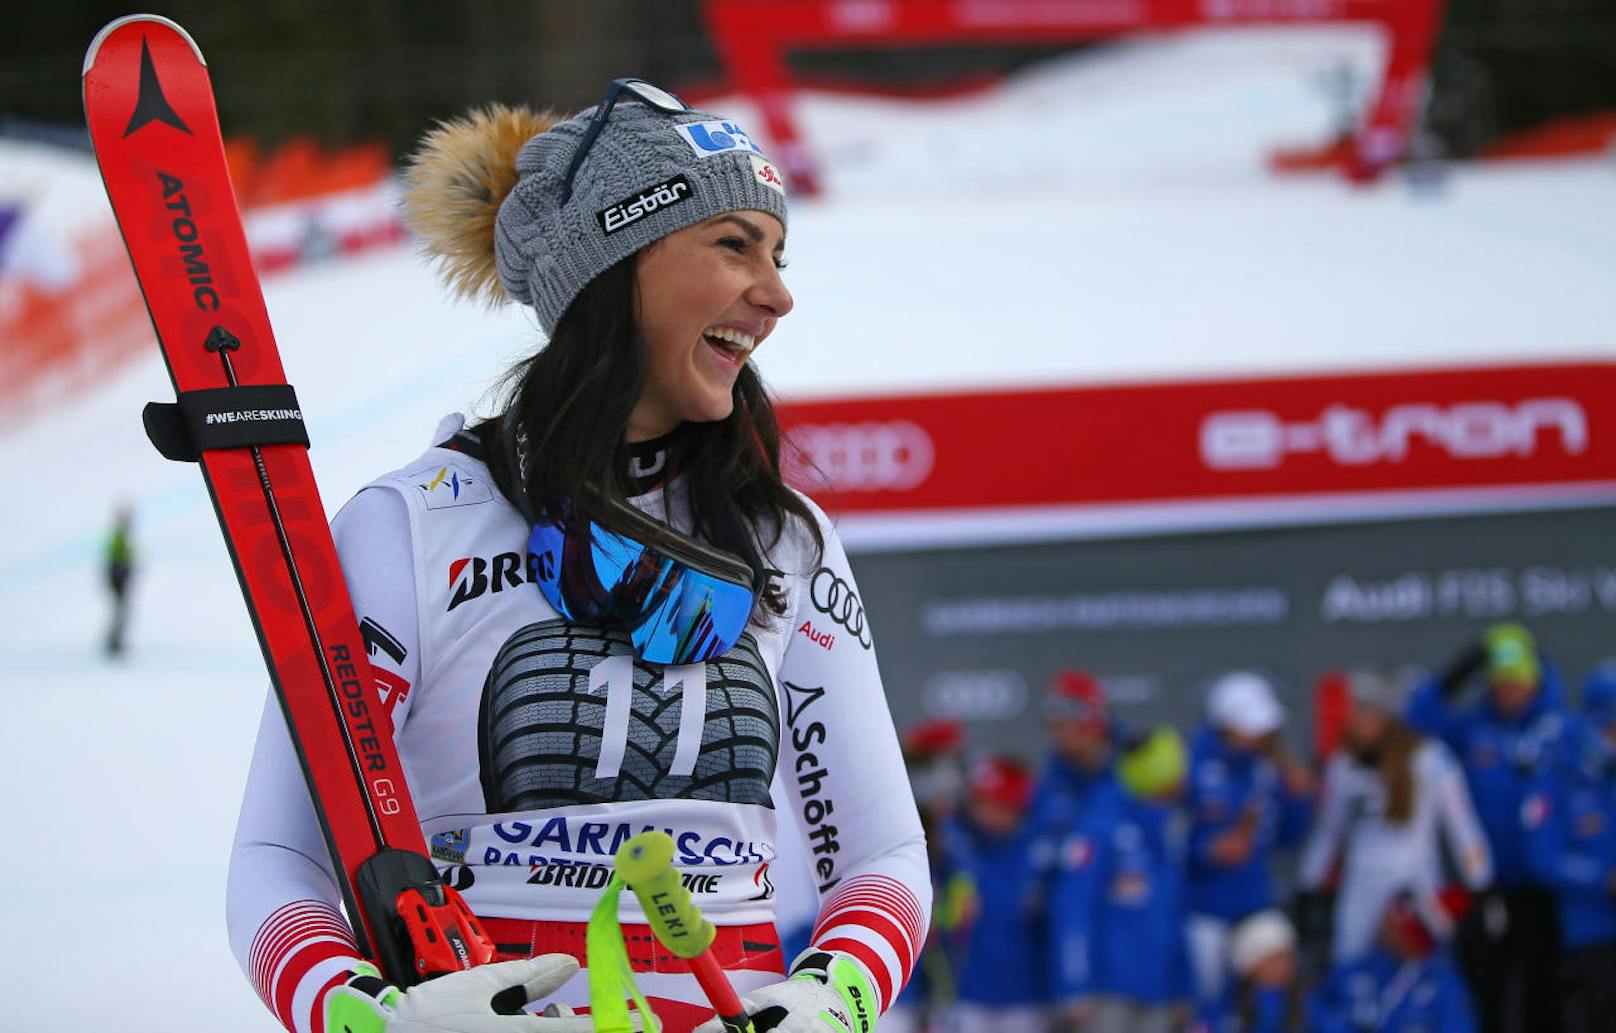 Die nächste Premiere gab es 24 Stunden später. Stephanie Venier freute sich über ihren ersten Weltcup-Sieg überhaupt. Die Tirolerin setzte sich in der Abfahrt vor Olympiasiegerin Sofia Goggia aus Italien durch.

<b><i>Garmisch, Abfahrt (27.1.2019)</i></b>
<b>1. Stephanie Venier</b>
2. Sofia Goggia (It)
3. Kira Weidle (D)